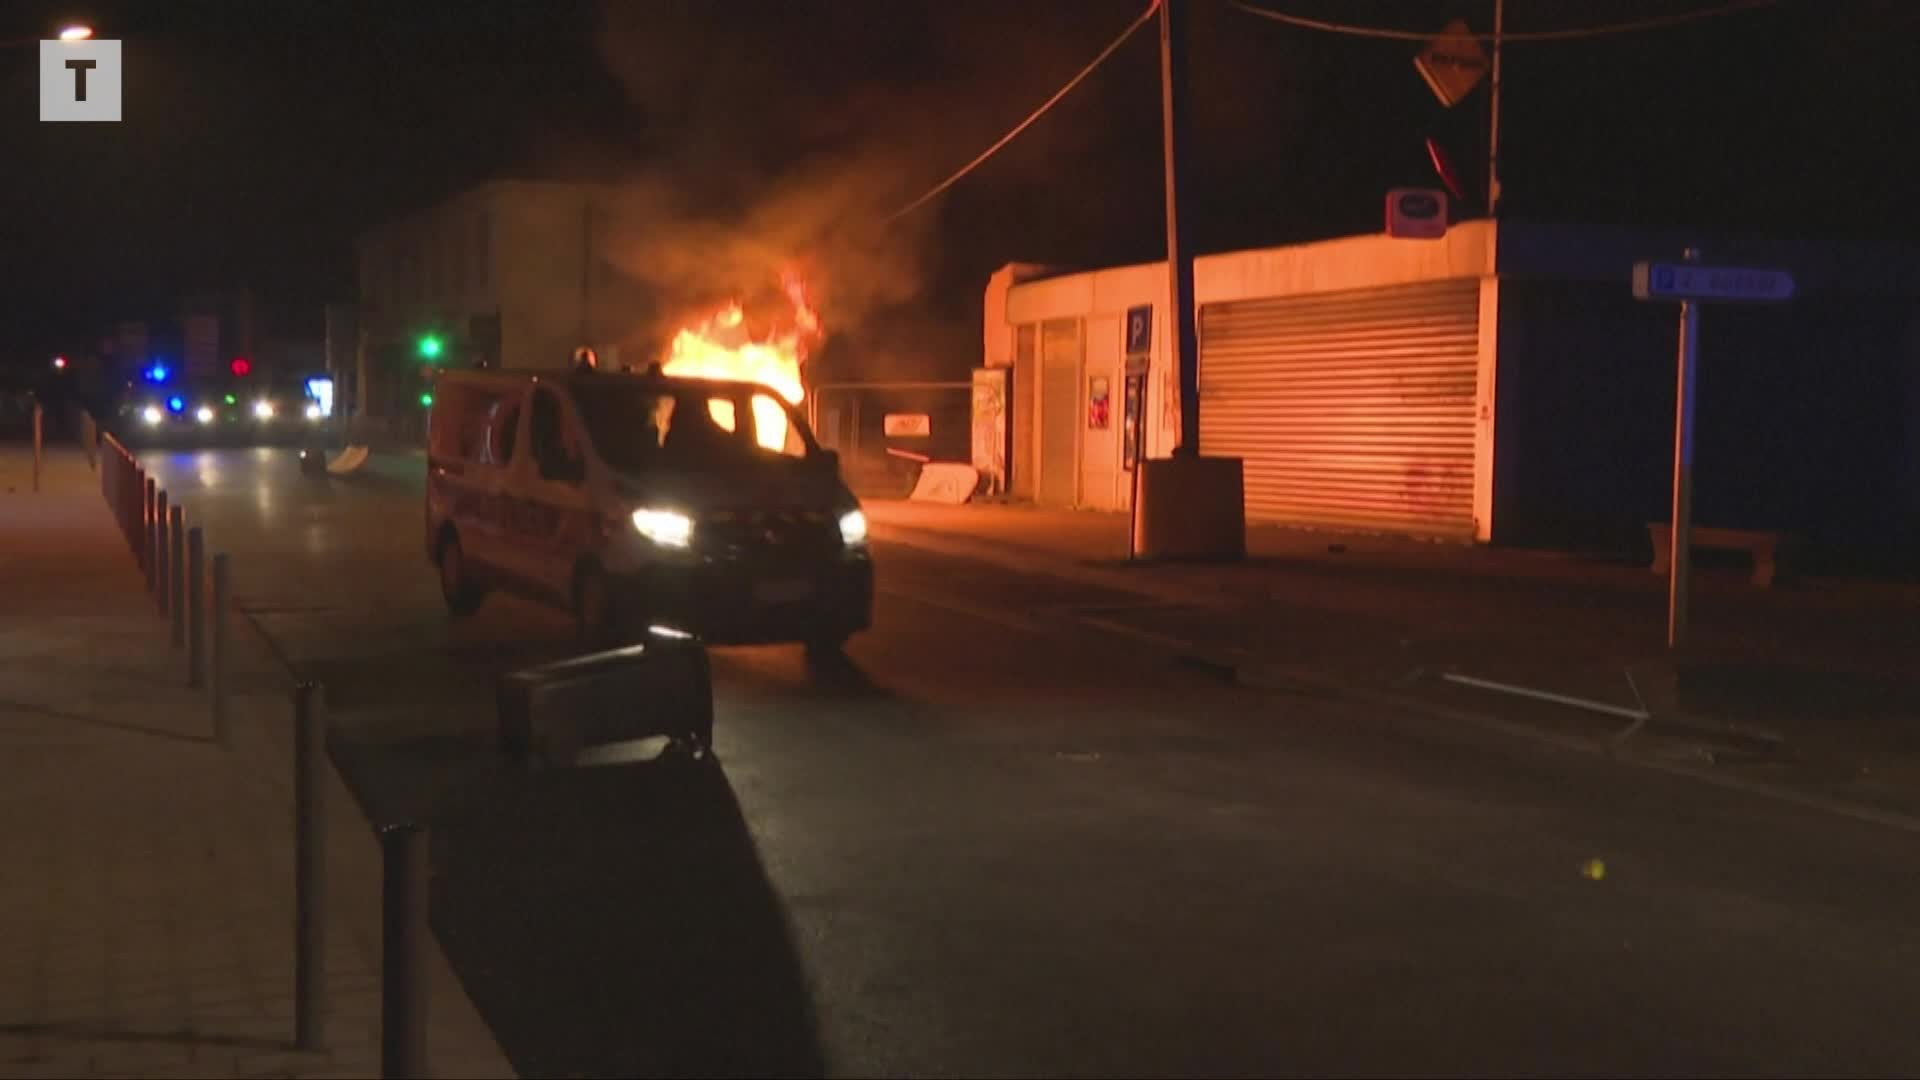 Bus brûlés, magasins pillés : les stigmates des violences urbaines en France [En images]